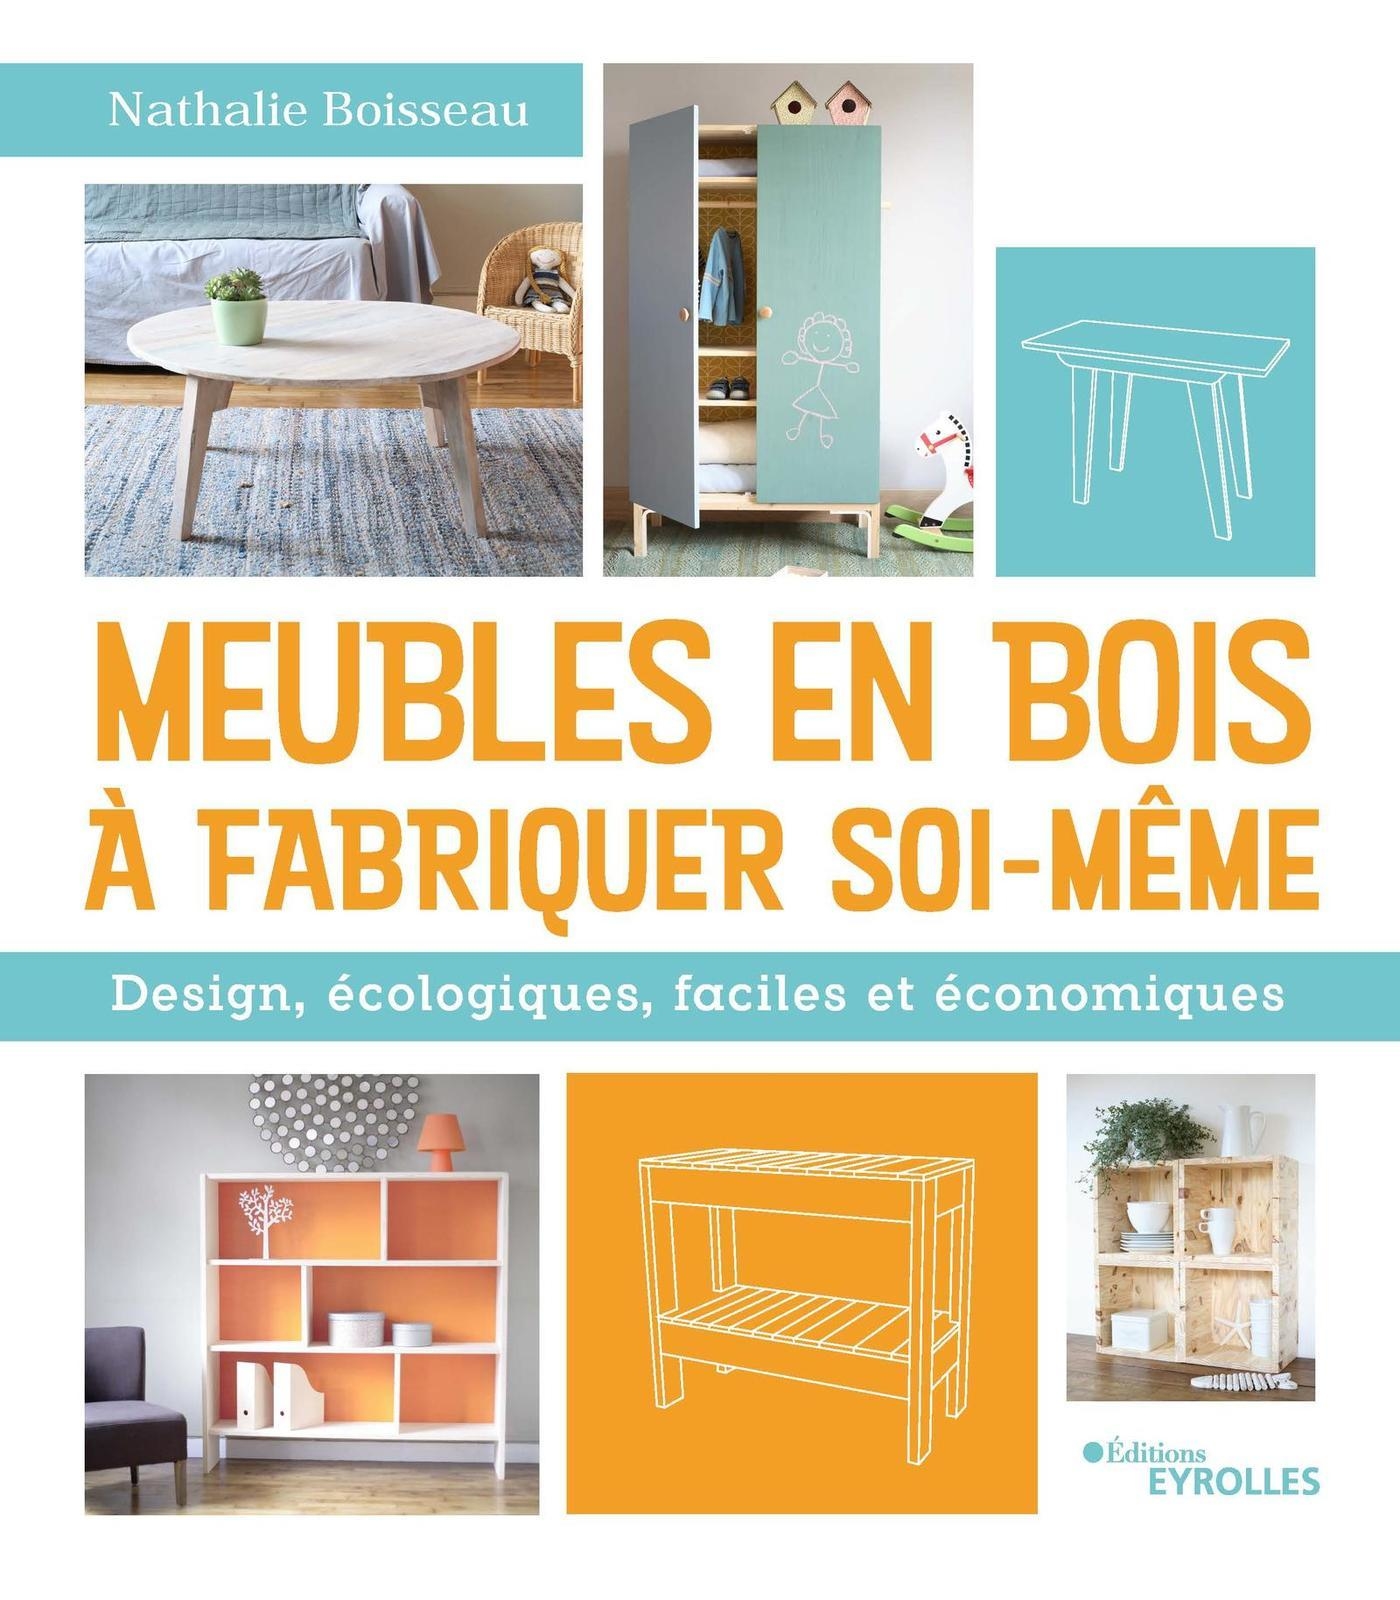 Meubles en bois à fabriquer soi-même - Design, écologiques, faciles et  économiques - Nathalie Boisseau (EAN13 : 9782212384406)